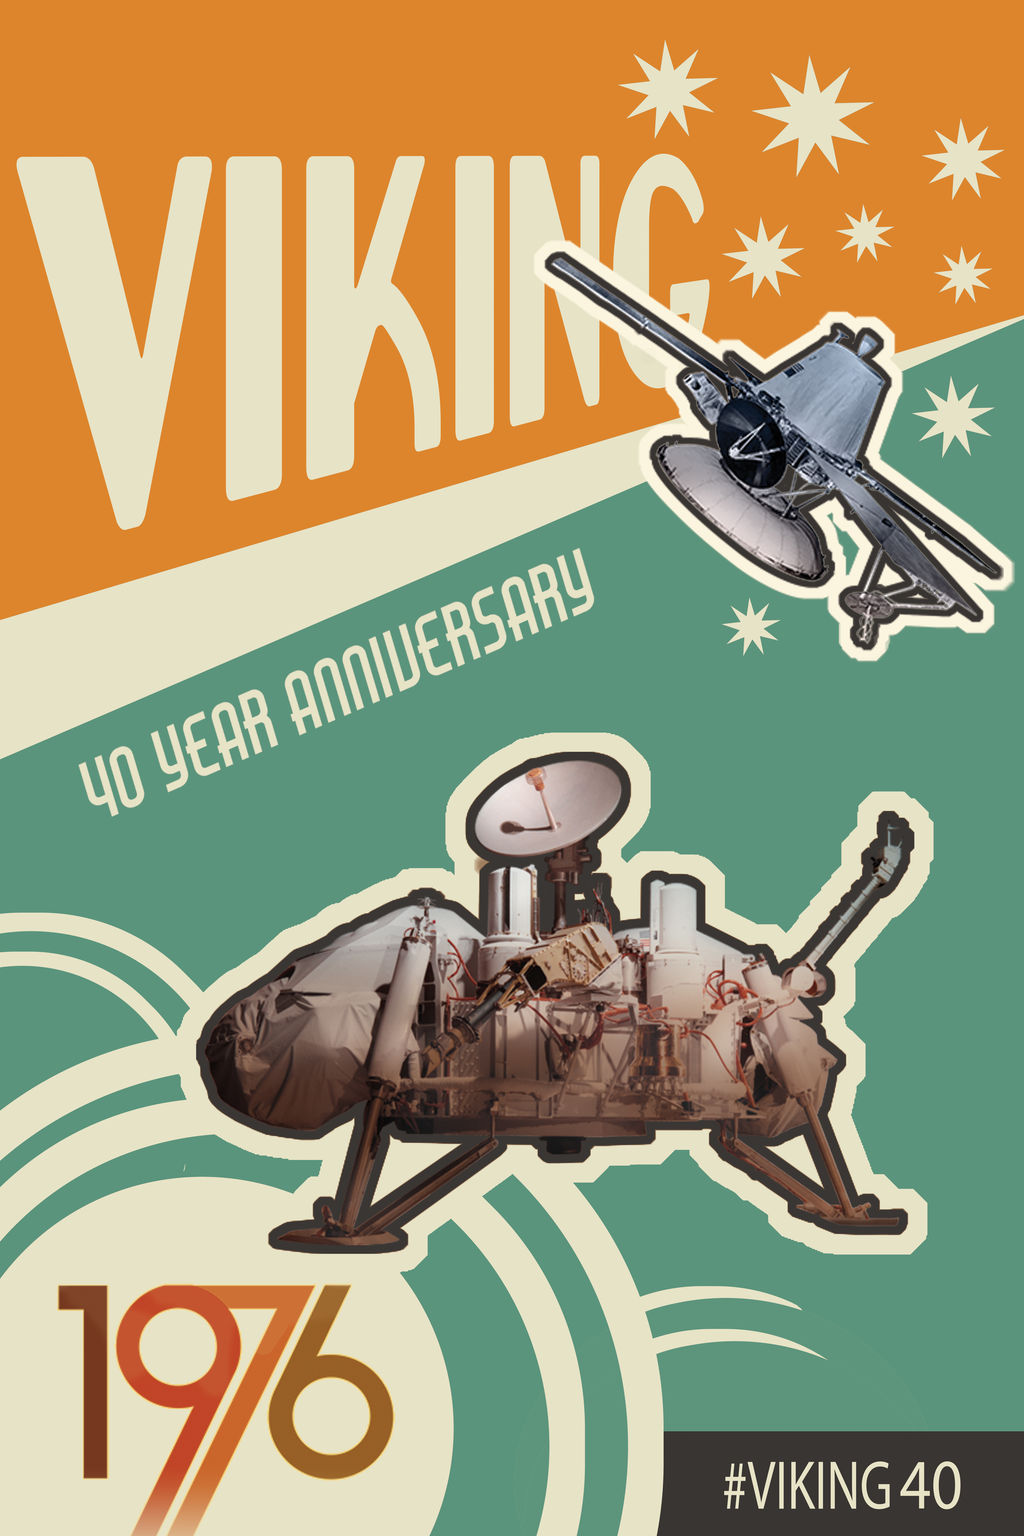  Anniversary artwork of NASA Viking 1 and Viking 2 Orbiters and Landers. Infographic text: Viking 40 Year Anniversary. 1976. #viking40 